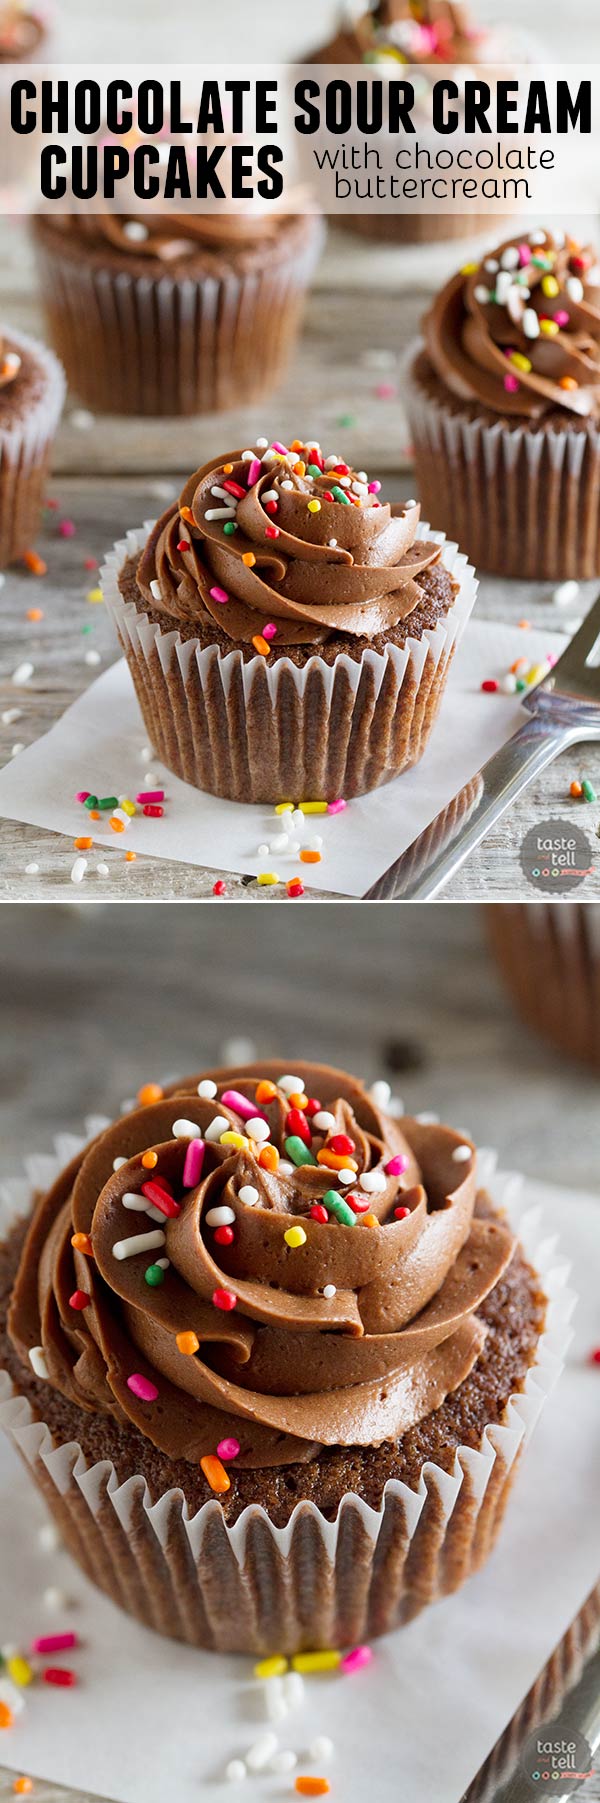 Chocolate Sour Cream Cupcakes Recipe